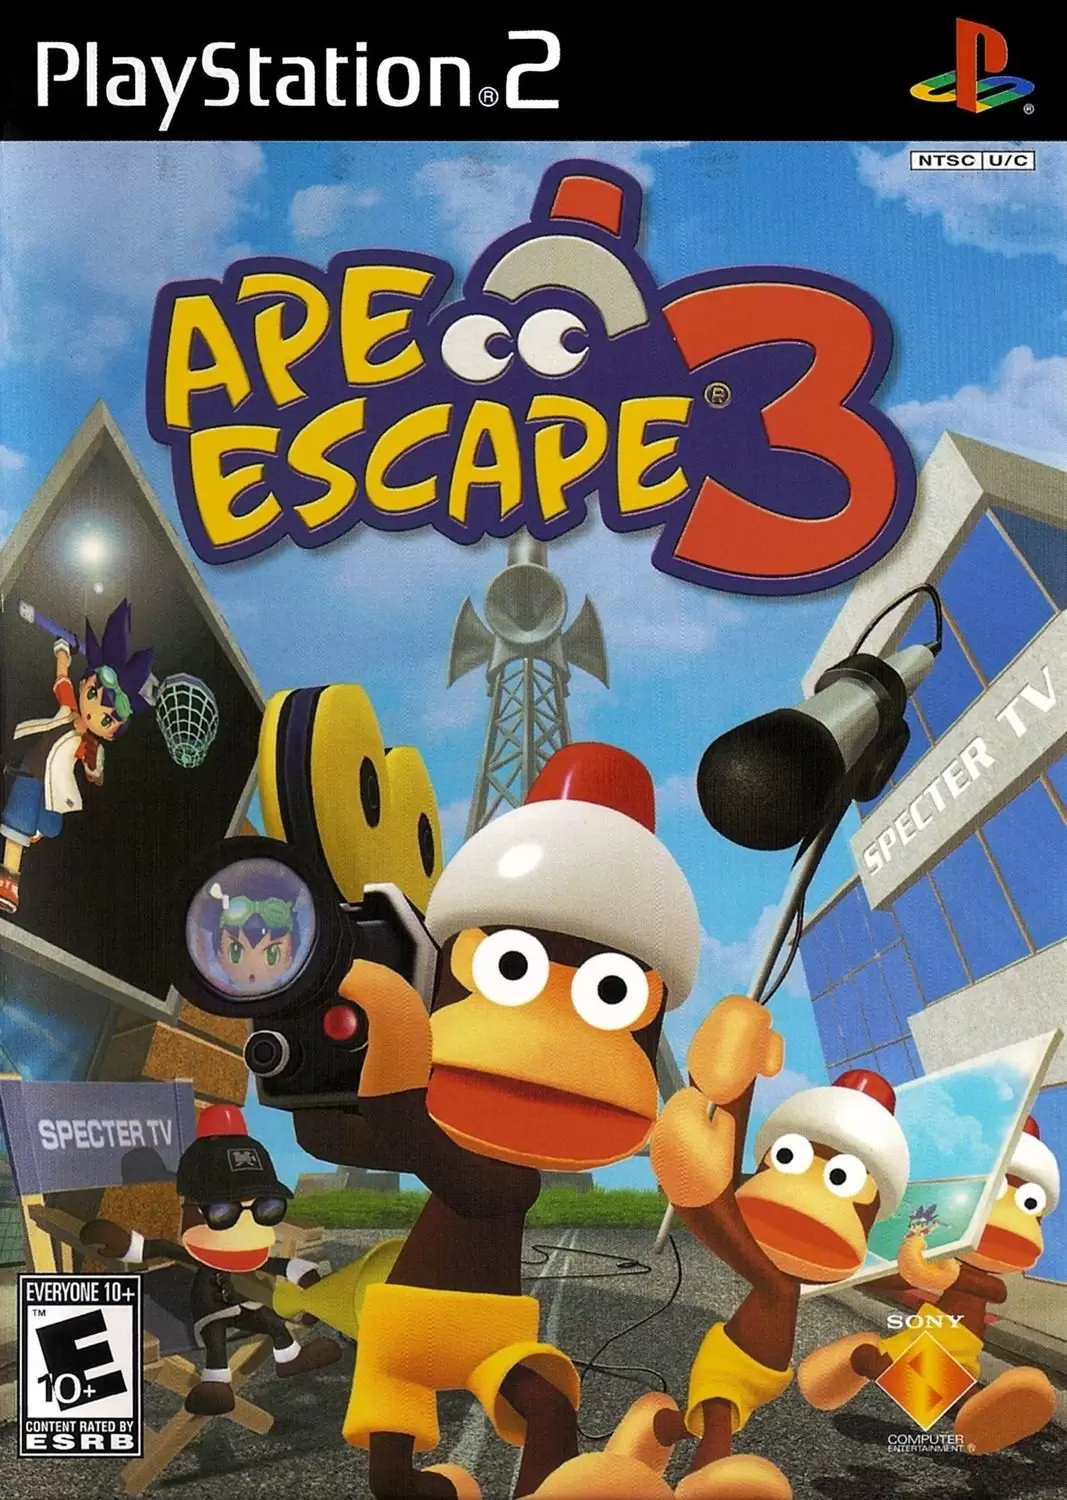 PS2 Games - Ape Escape 3